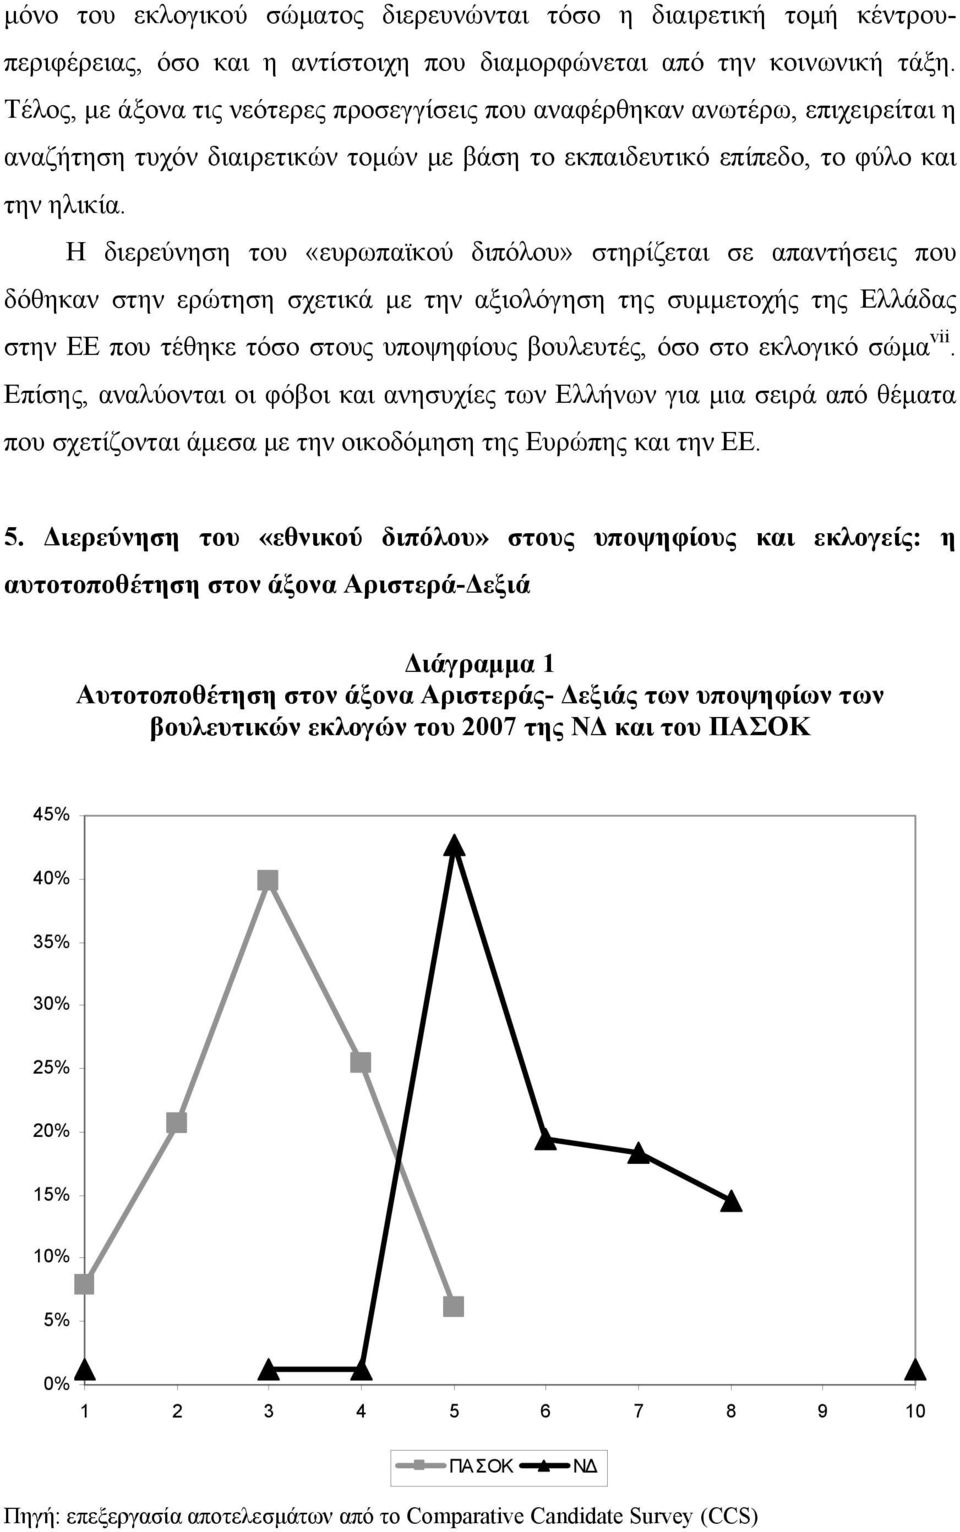 Η διερεύνηση του «ευρωπαϊκού διπόλου» στηρίζεται σε απαντήσεις που δόθηκαν στην ερώτηση σχετικά με την αξιολόγηση της συμμετοχής της Ελλάδας στην ΕΕ που τέθηκε τόσο στους υποψηφίους βουλευτές, όσο